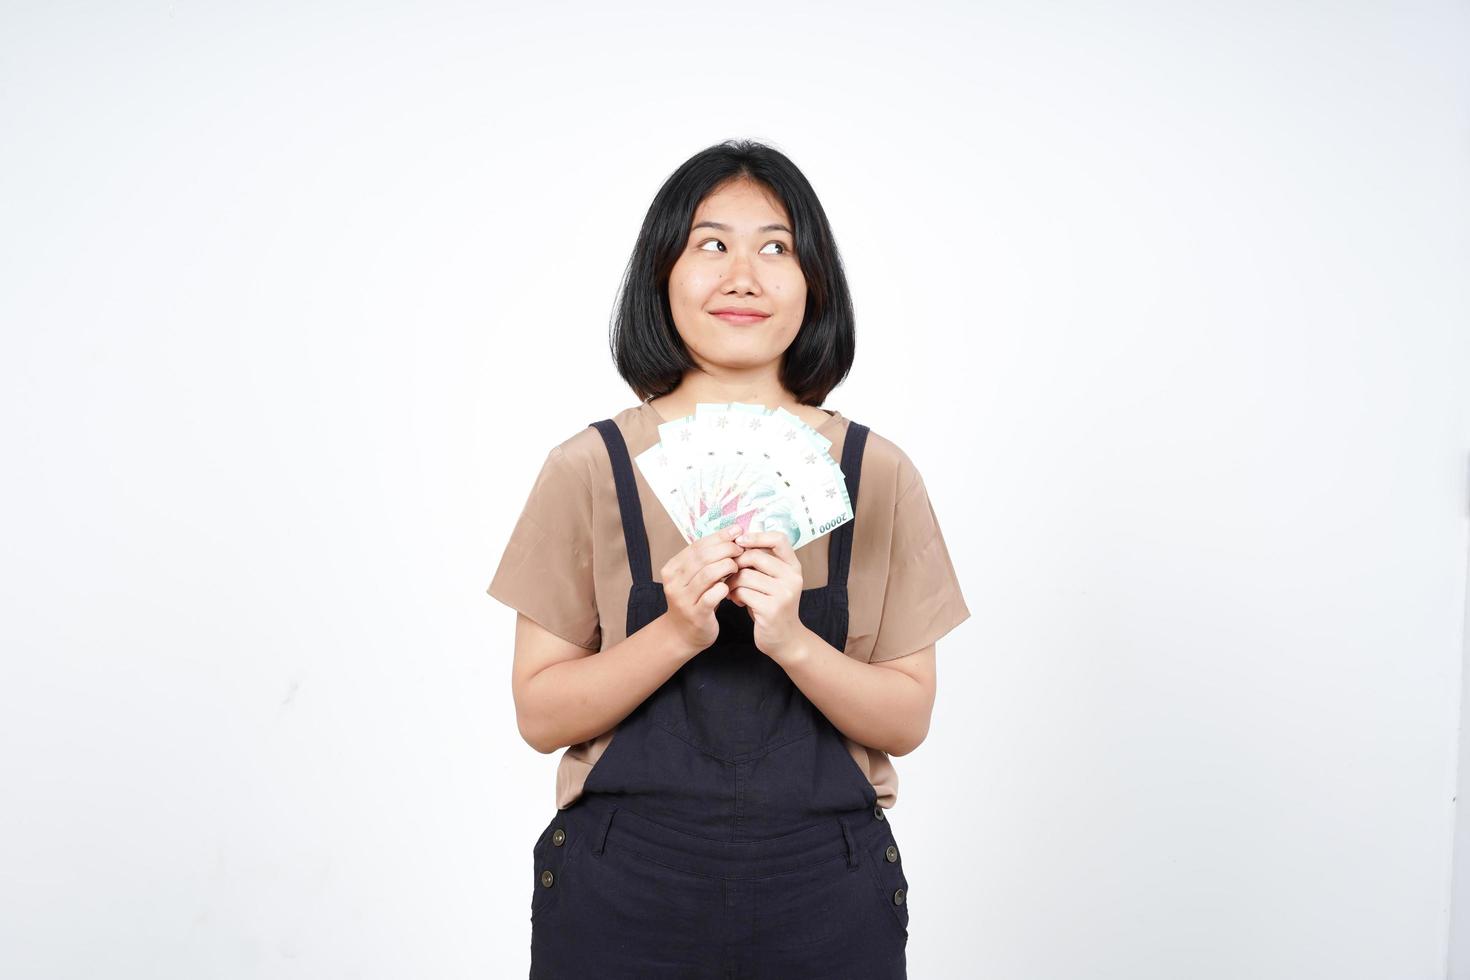 hält Indonesien neue Banknote der schönen asiatischen Frau isoliert auf weißem Hintergrund foto